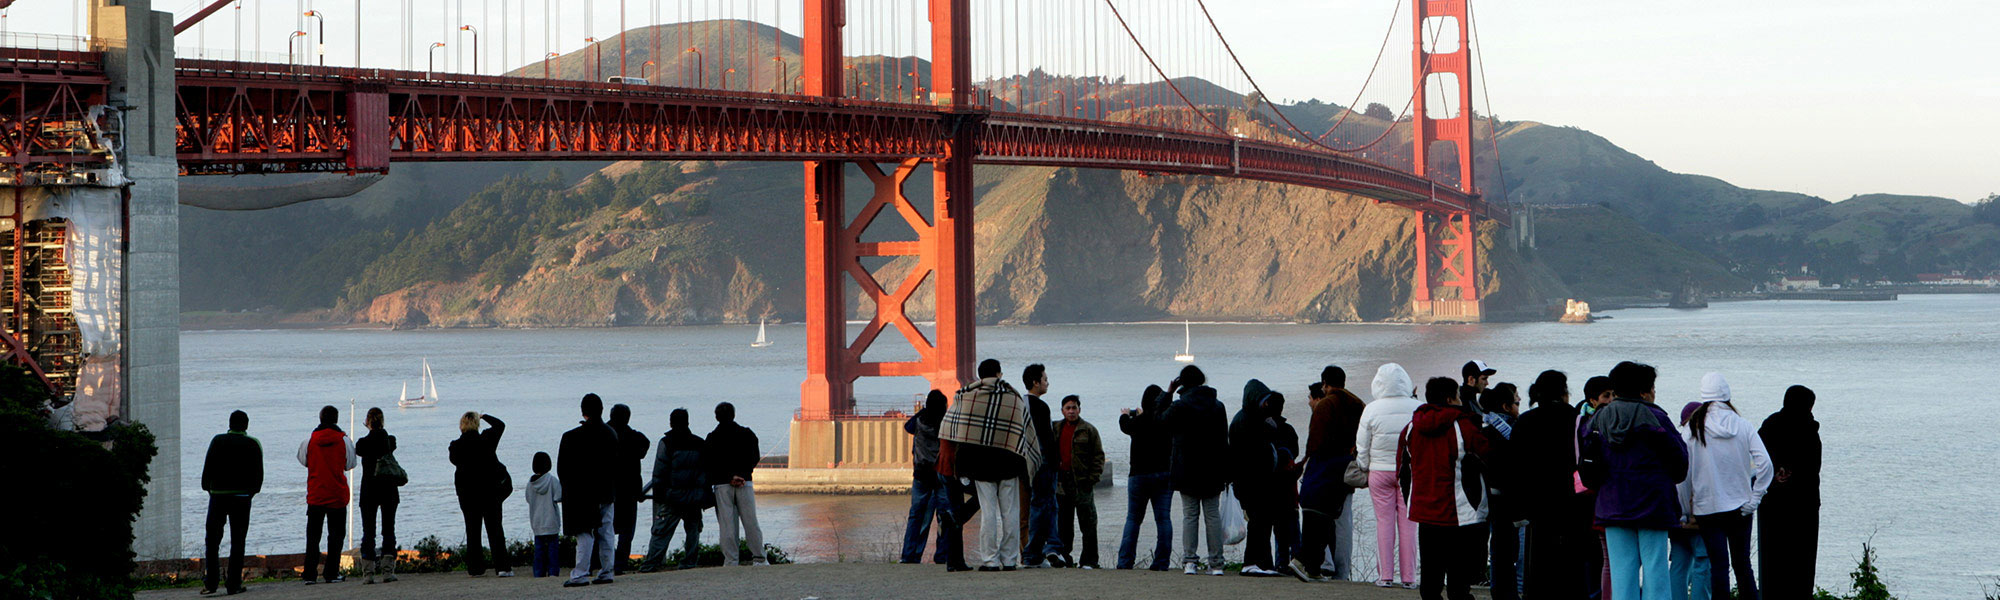 أهم الأنشطة السياحية في جسر سان فرانسيسكو